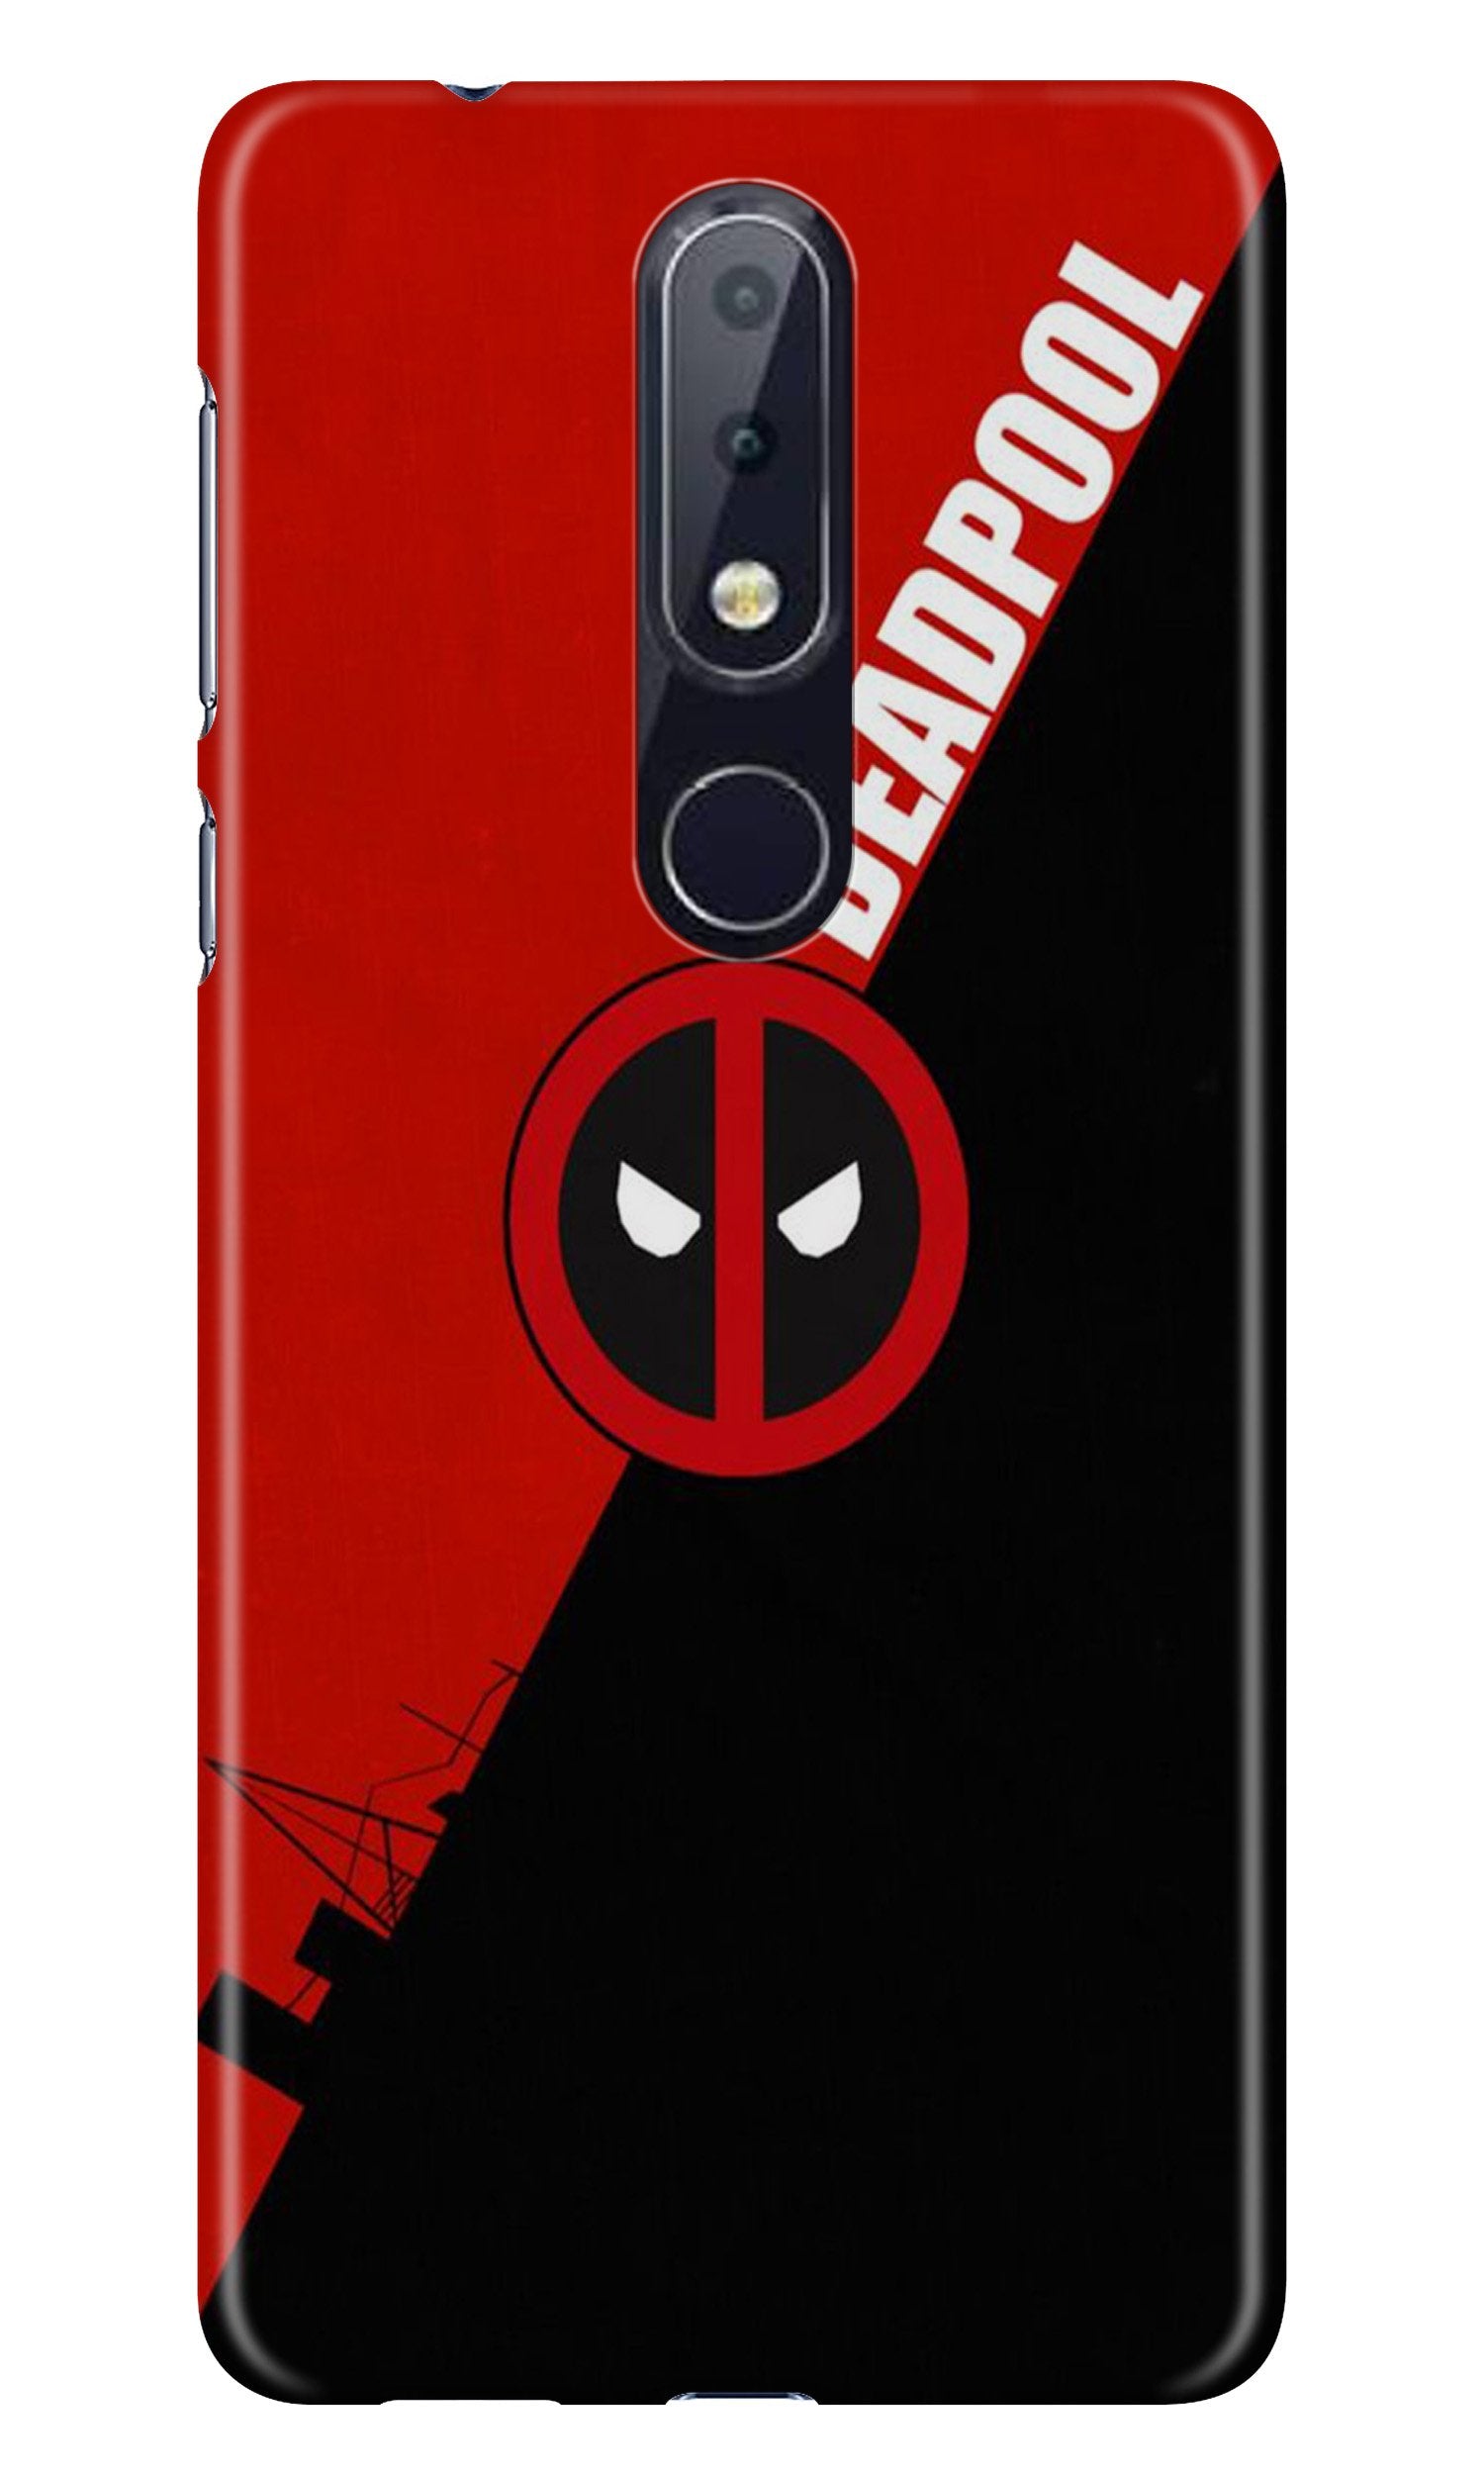 Deadpool Case for Nokia 7.1 (Design No. 248)